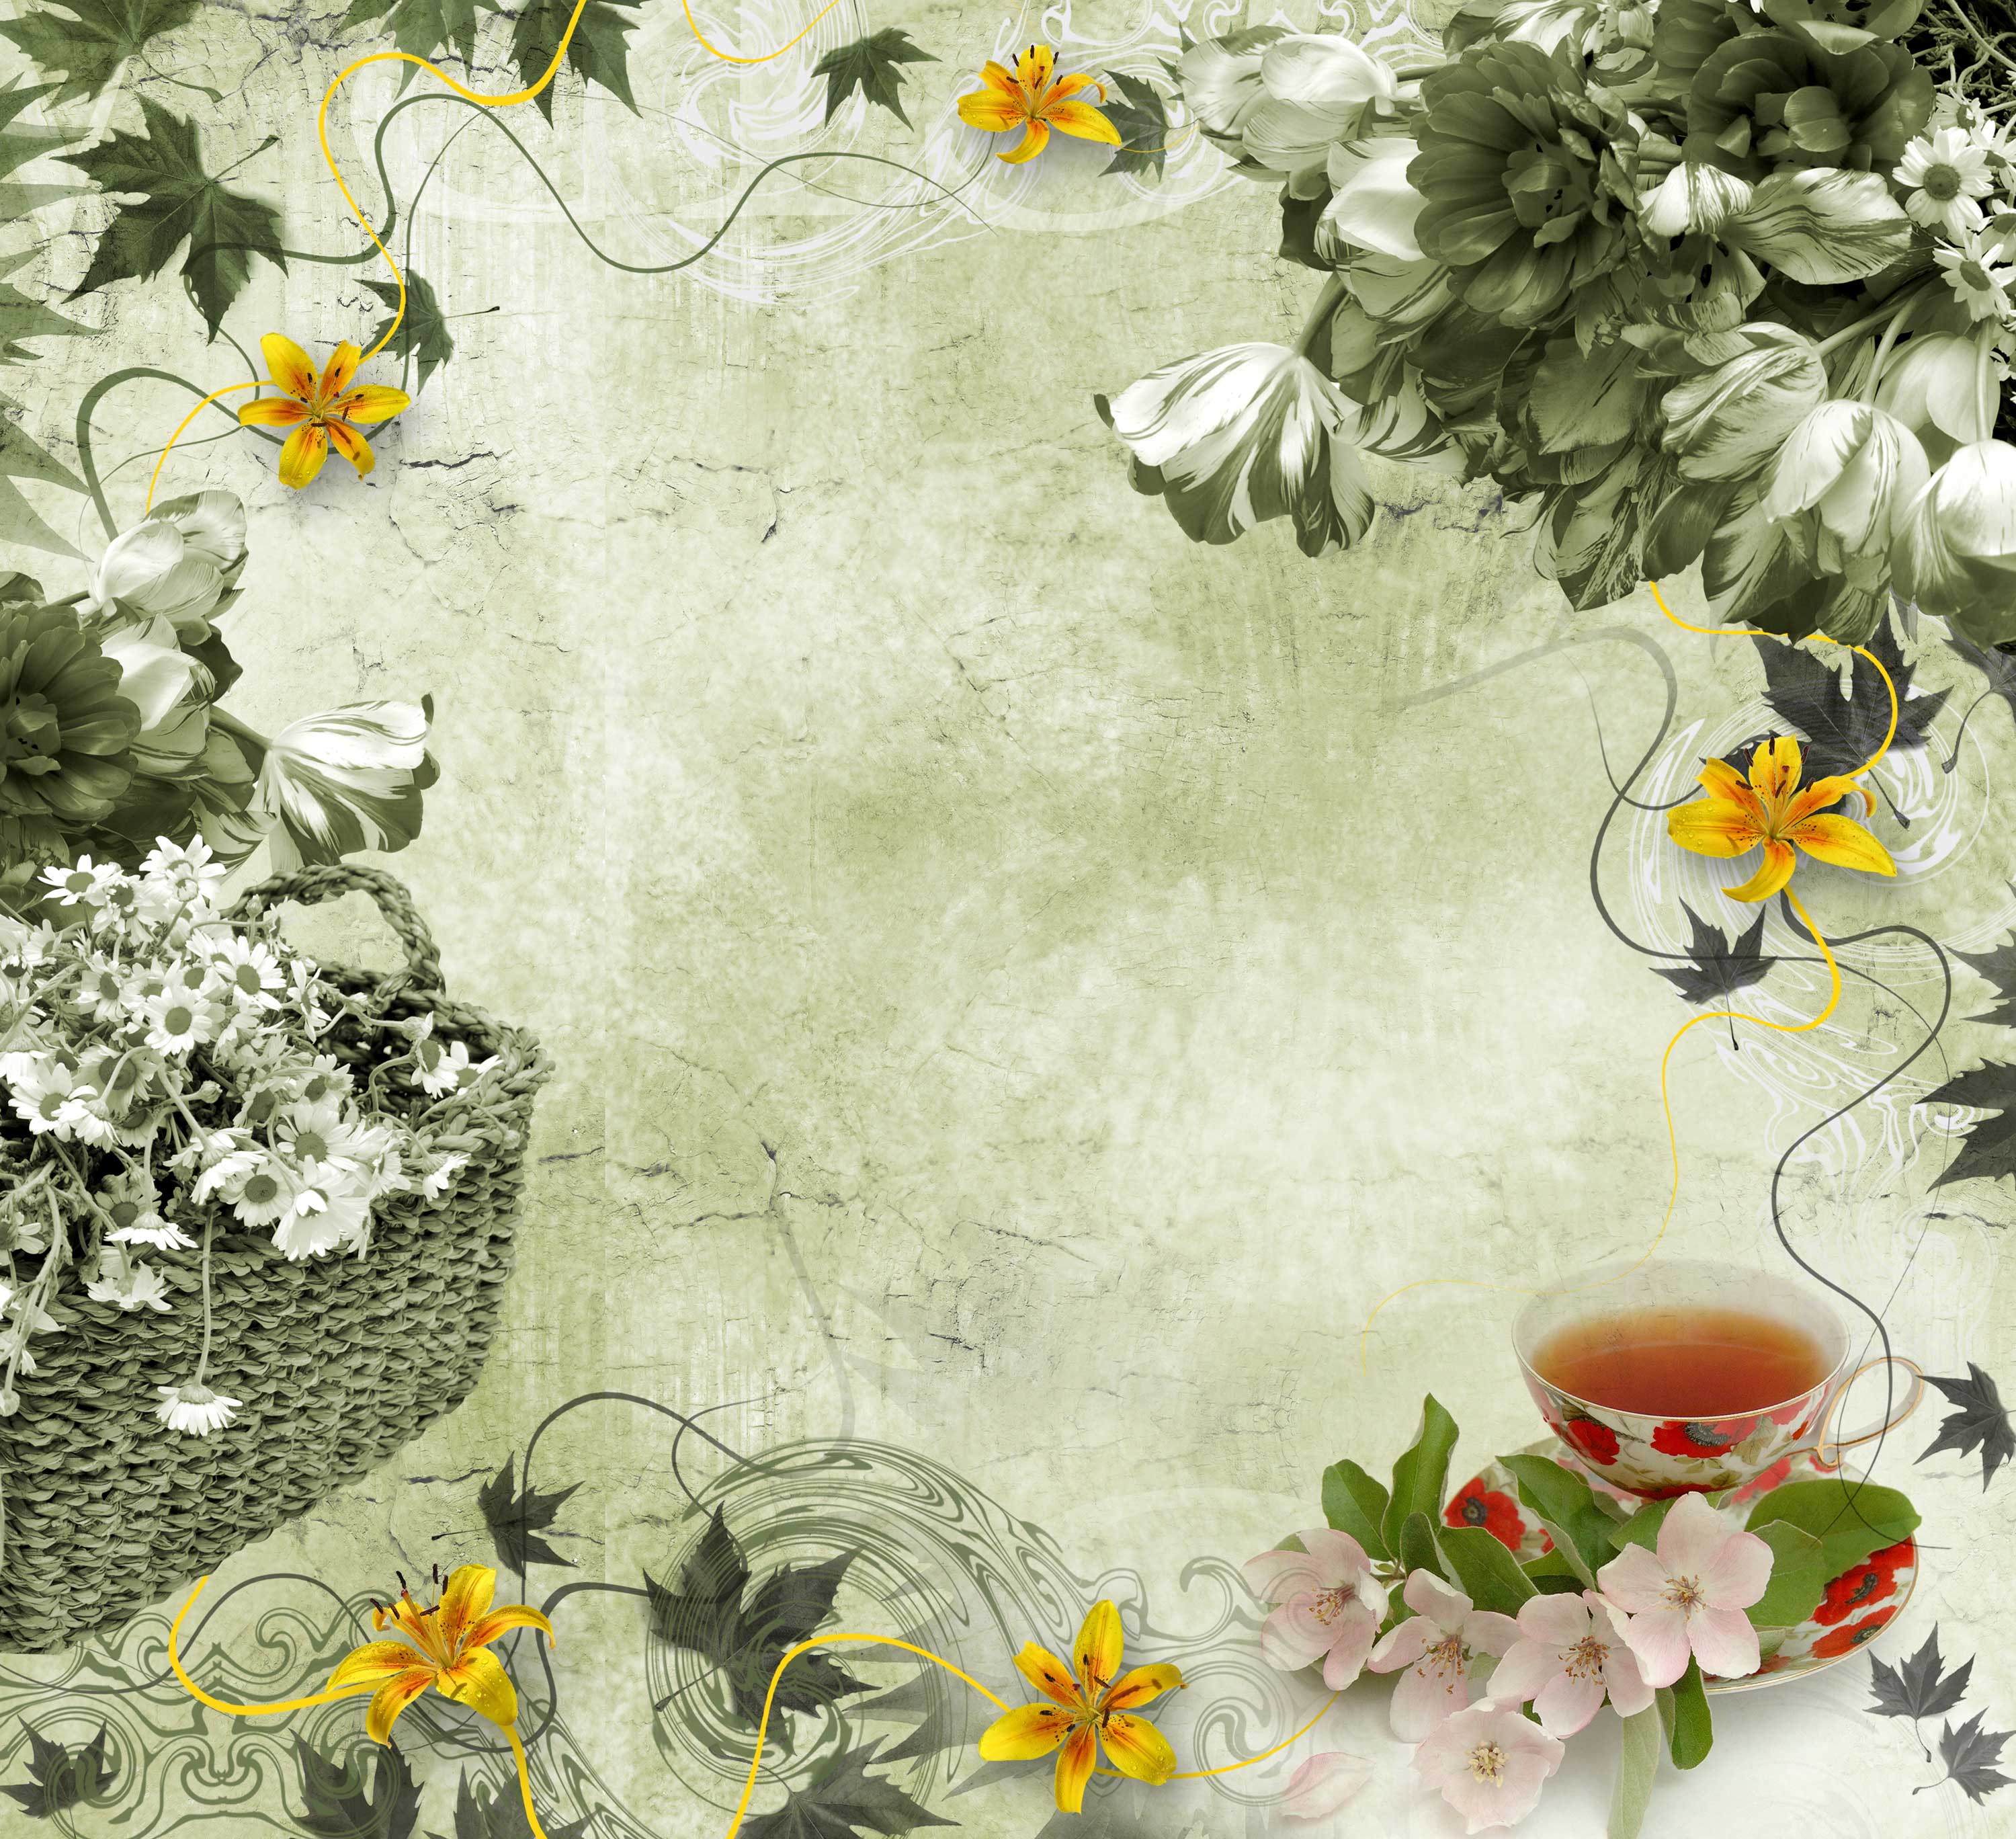 百合 ゆり の画像 イラスト フリー素材 壁紙 背景no 253 シック レトロ調 紅茶